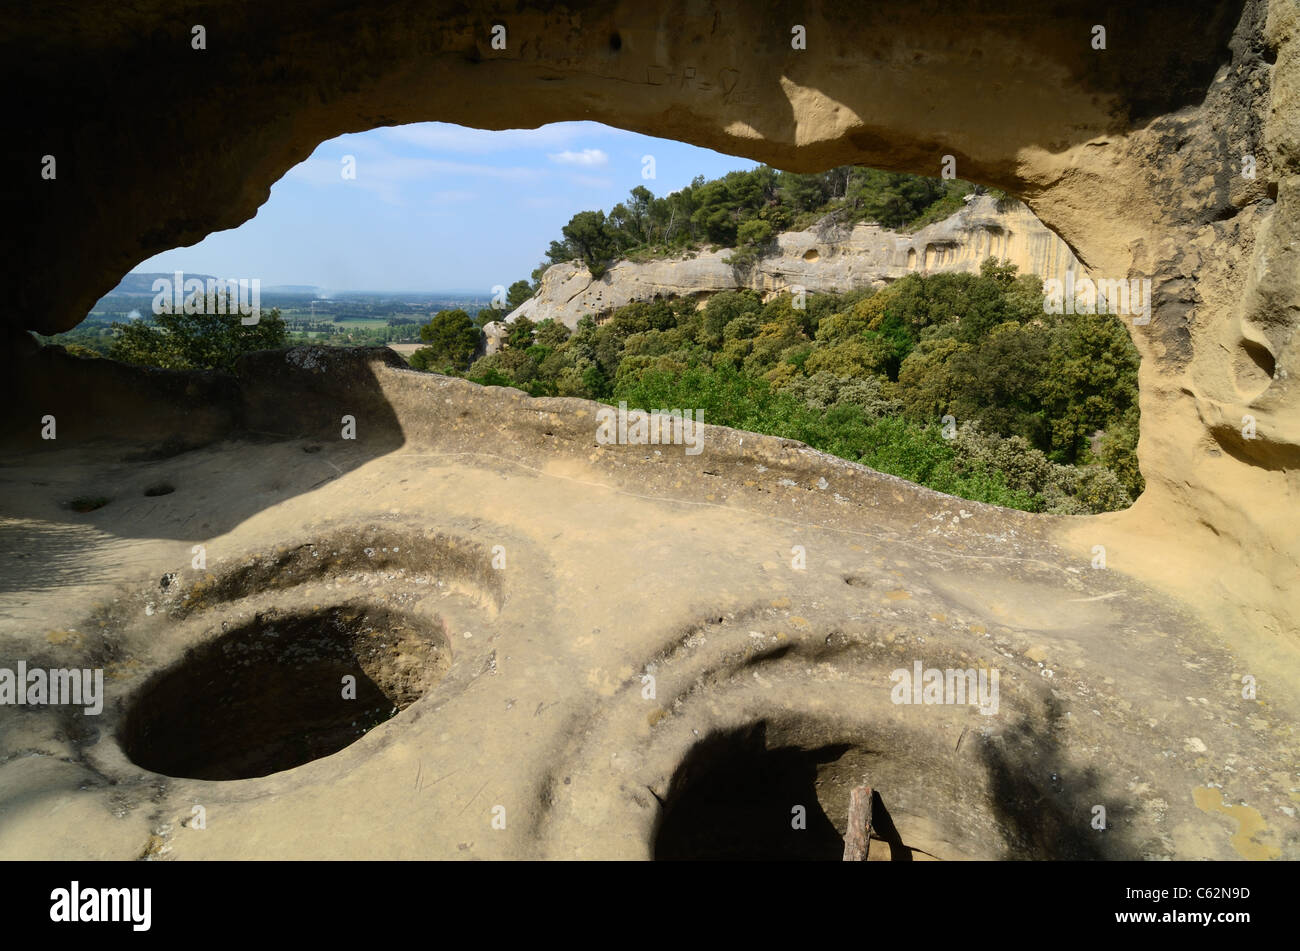 Troglodytenhaus, Höhlenwohnungen & Felsgestein Silos oder Lagerkeller in den Grottes de Calès, Lamanon, Provence, Frankreich Stockfoto